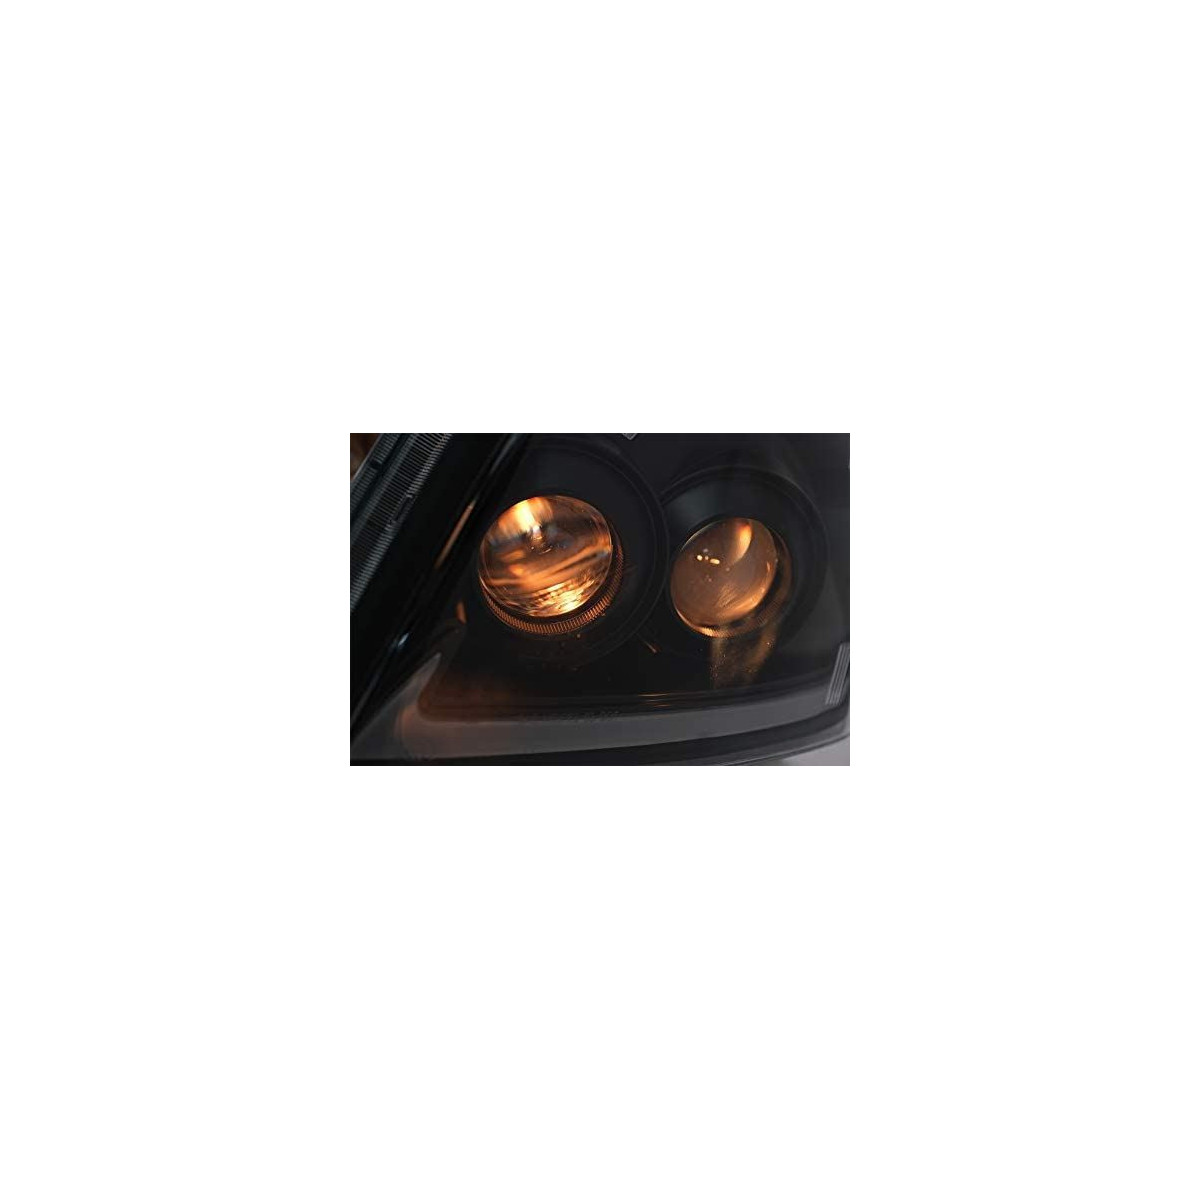 LAMPY TOYOTA LAND CRUISER 120 03-09 BLACK LED DTS